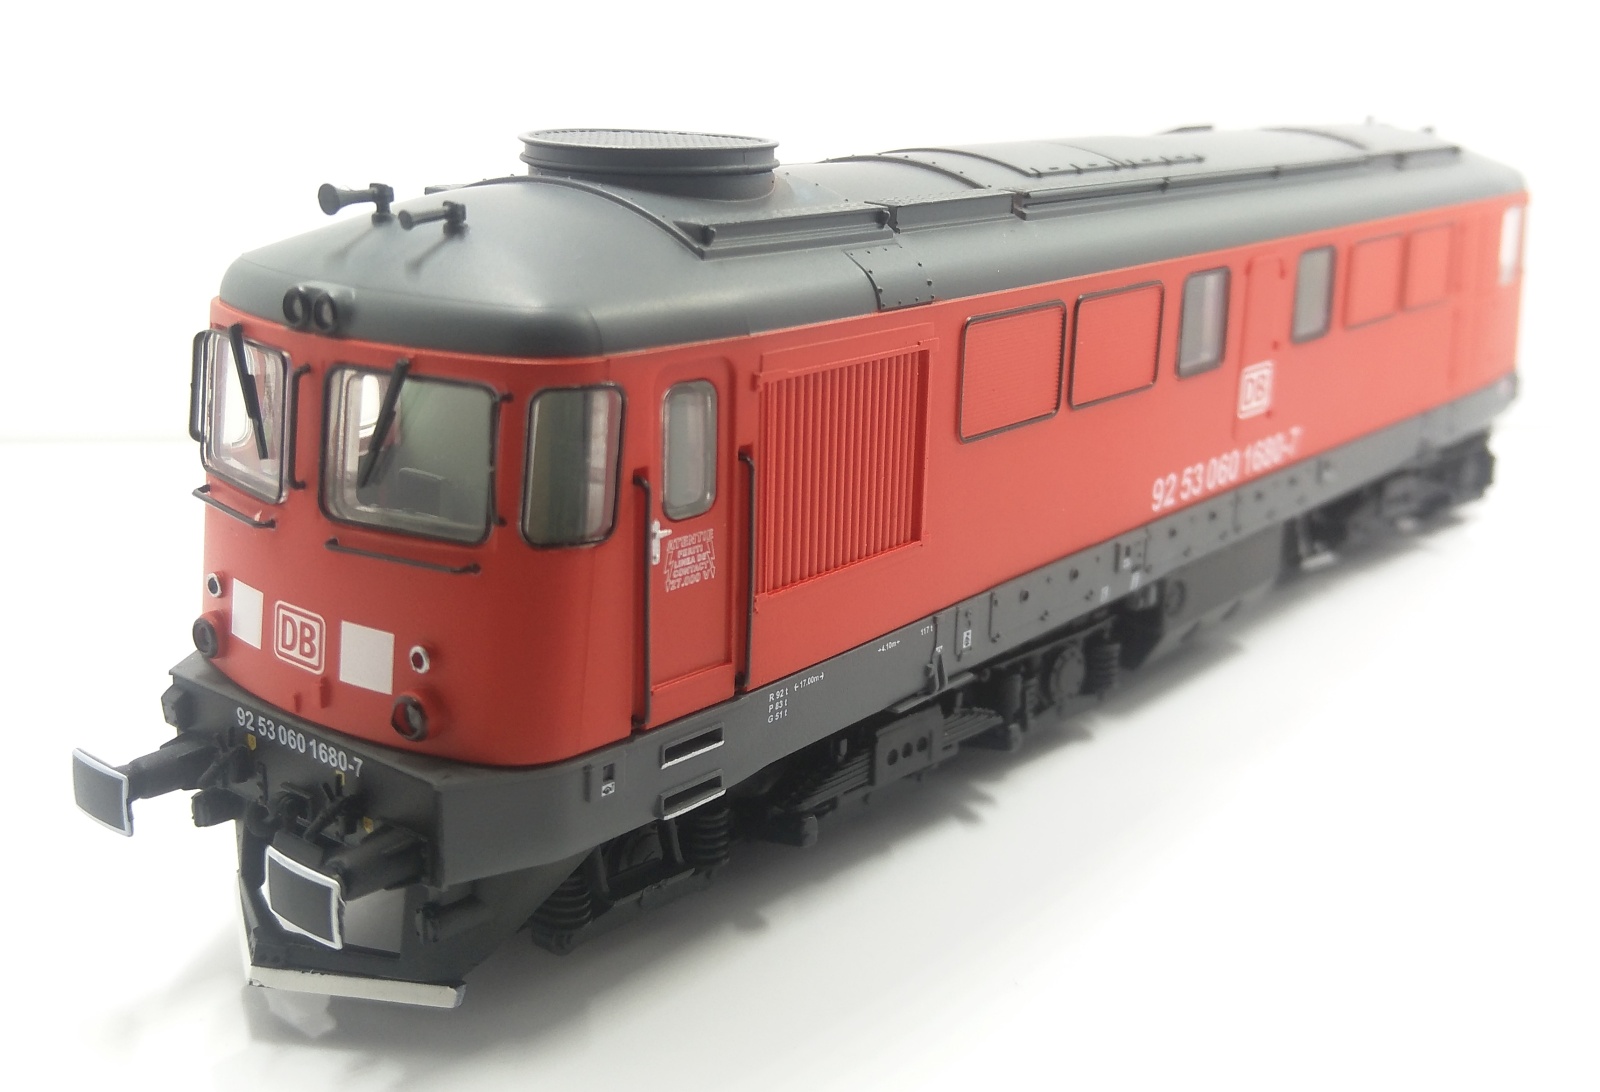 locomotiva-diesel-060-DA-DB-Schenker-Ro-albert-modell-060001-e.jpg